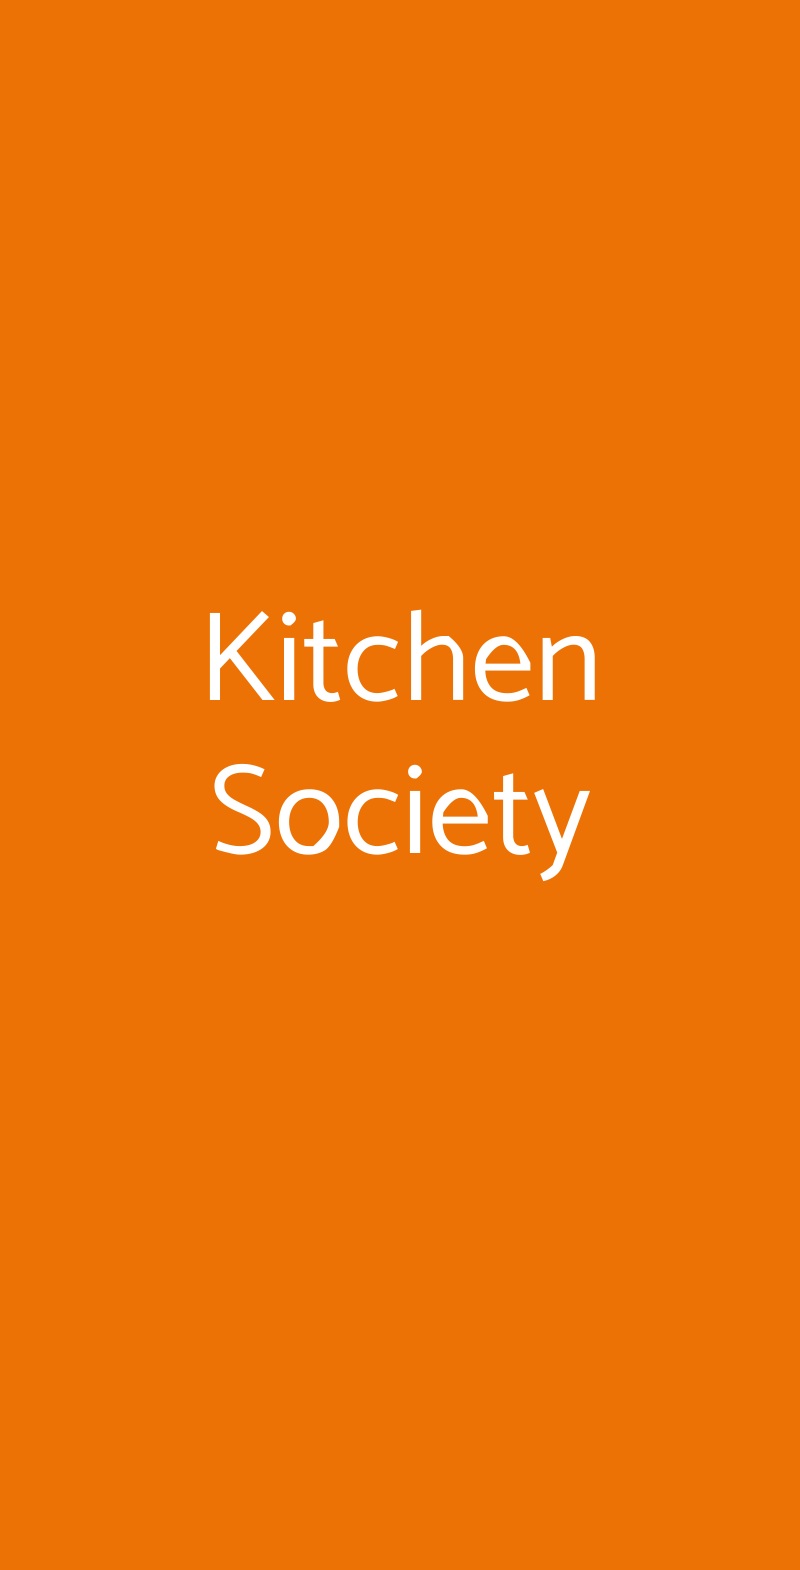 Kitchen Society Milano menù 1 pagina